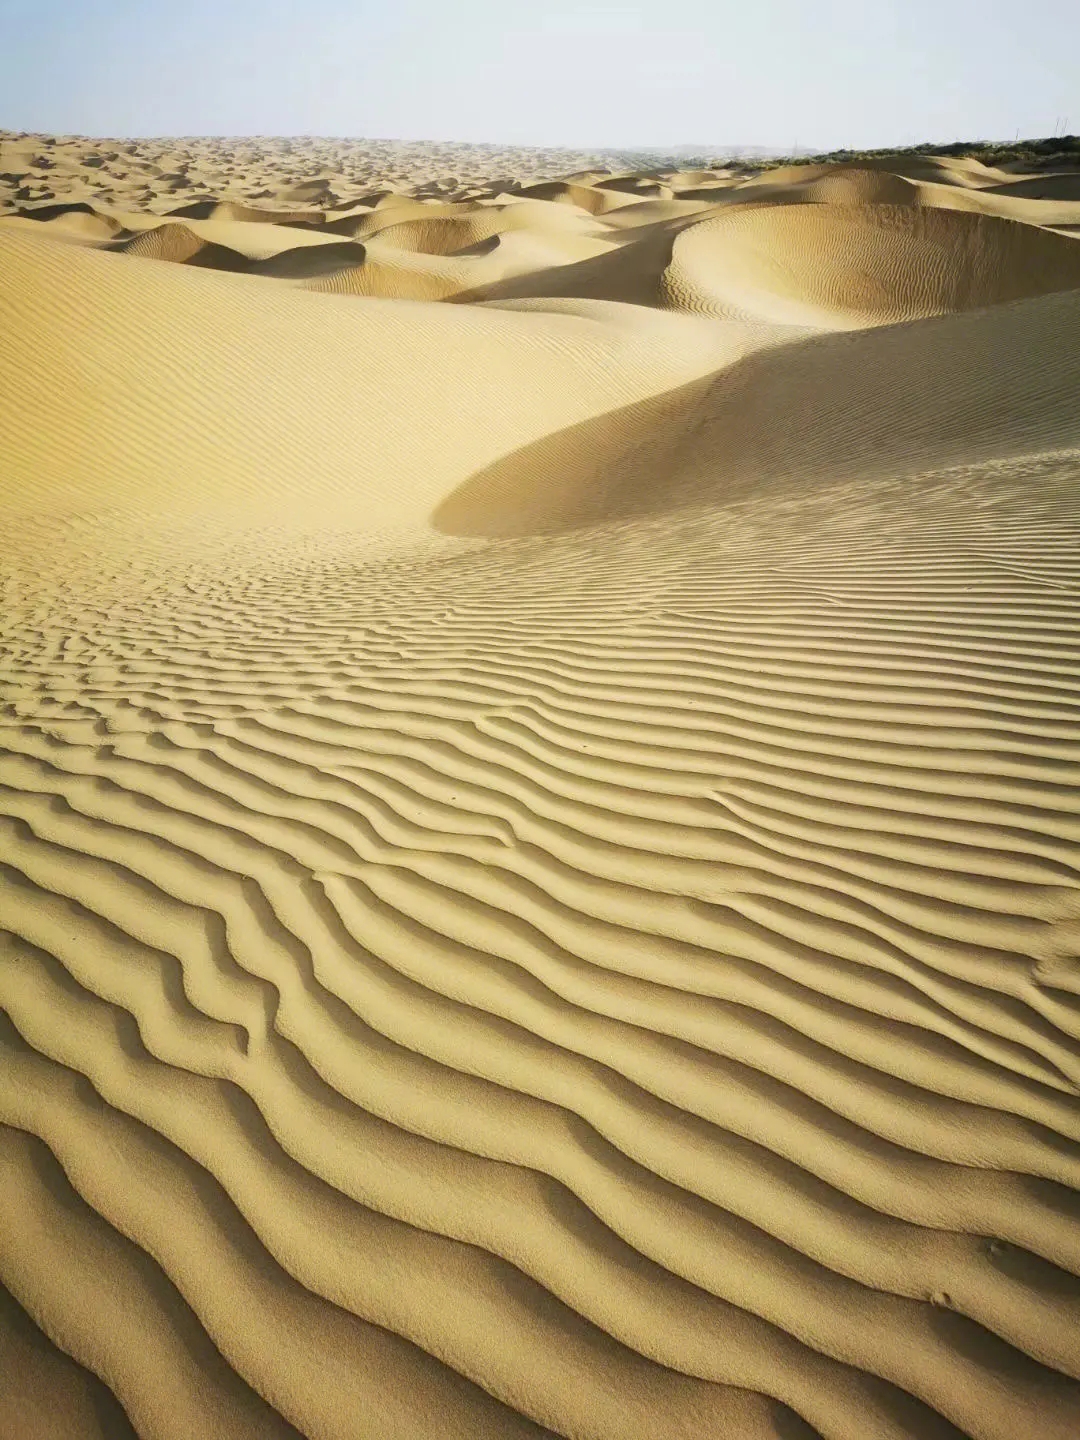 塔克拉玛干沙漠死亡沙漠的风景